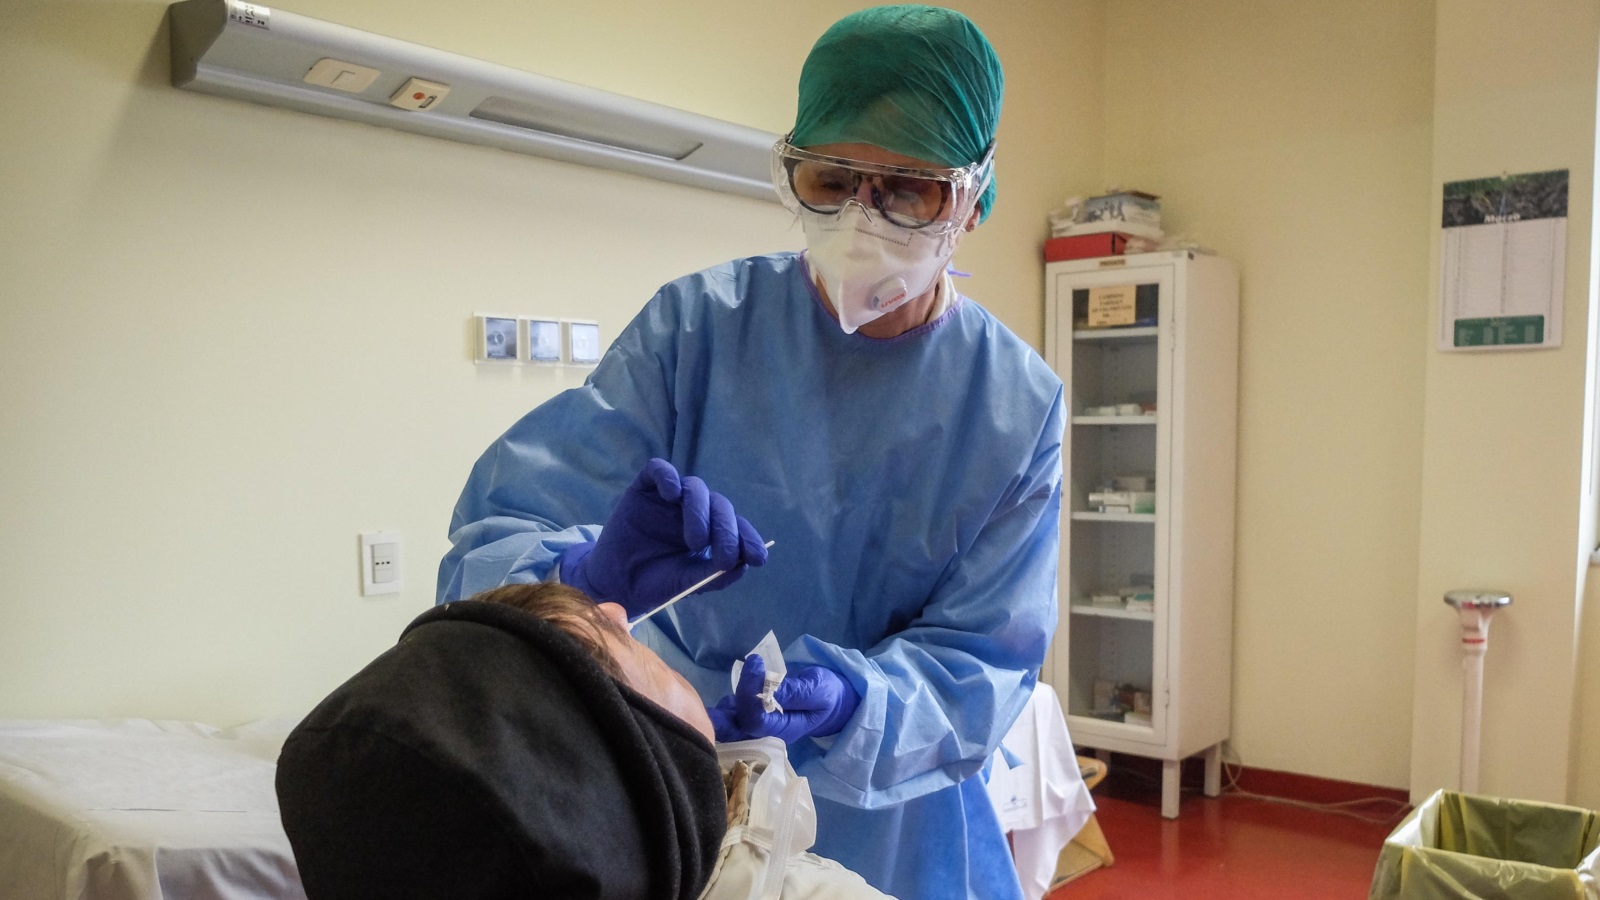 ‪طبيب يفحص شخصا في مستشفى بمدينة كريمونا شمال إيطاليا حيث يتفشى فيروس كورونا‬ (الأوروبية)